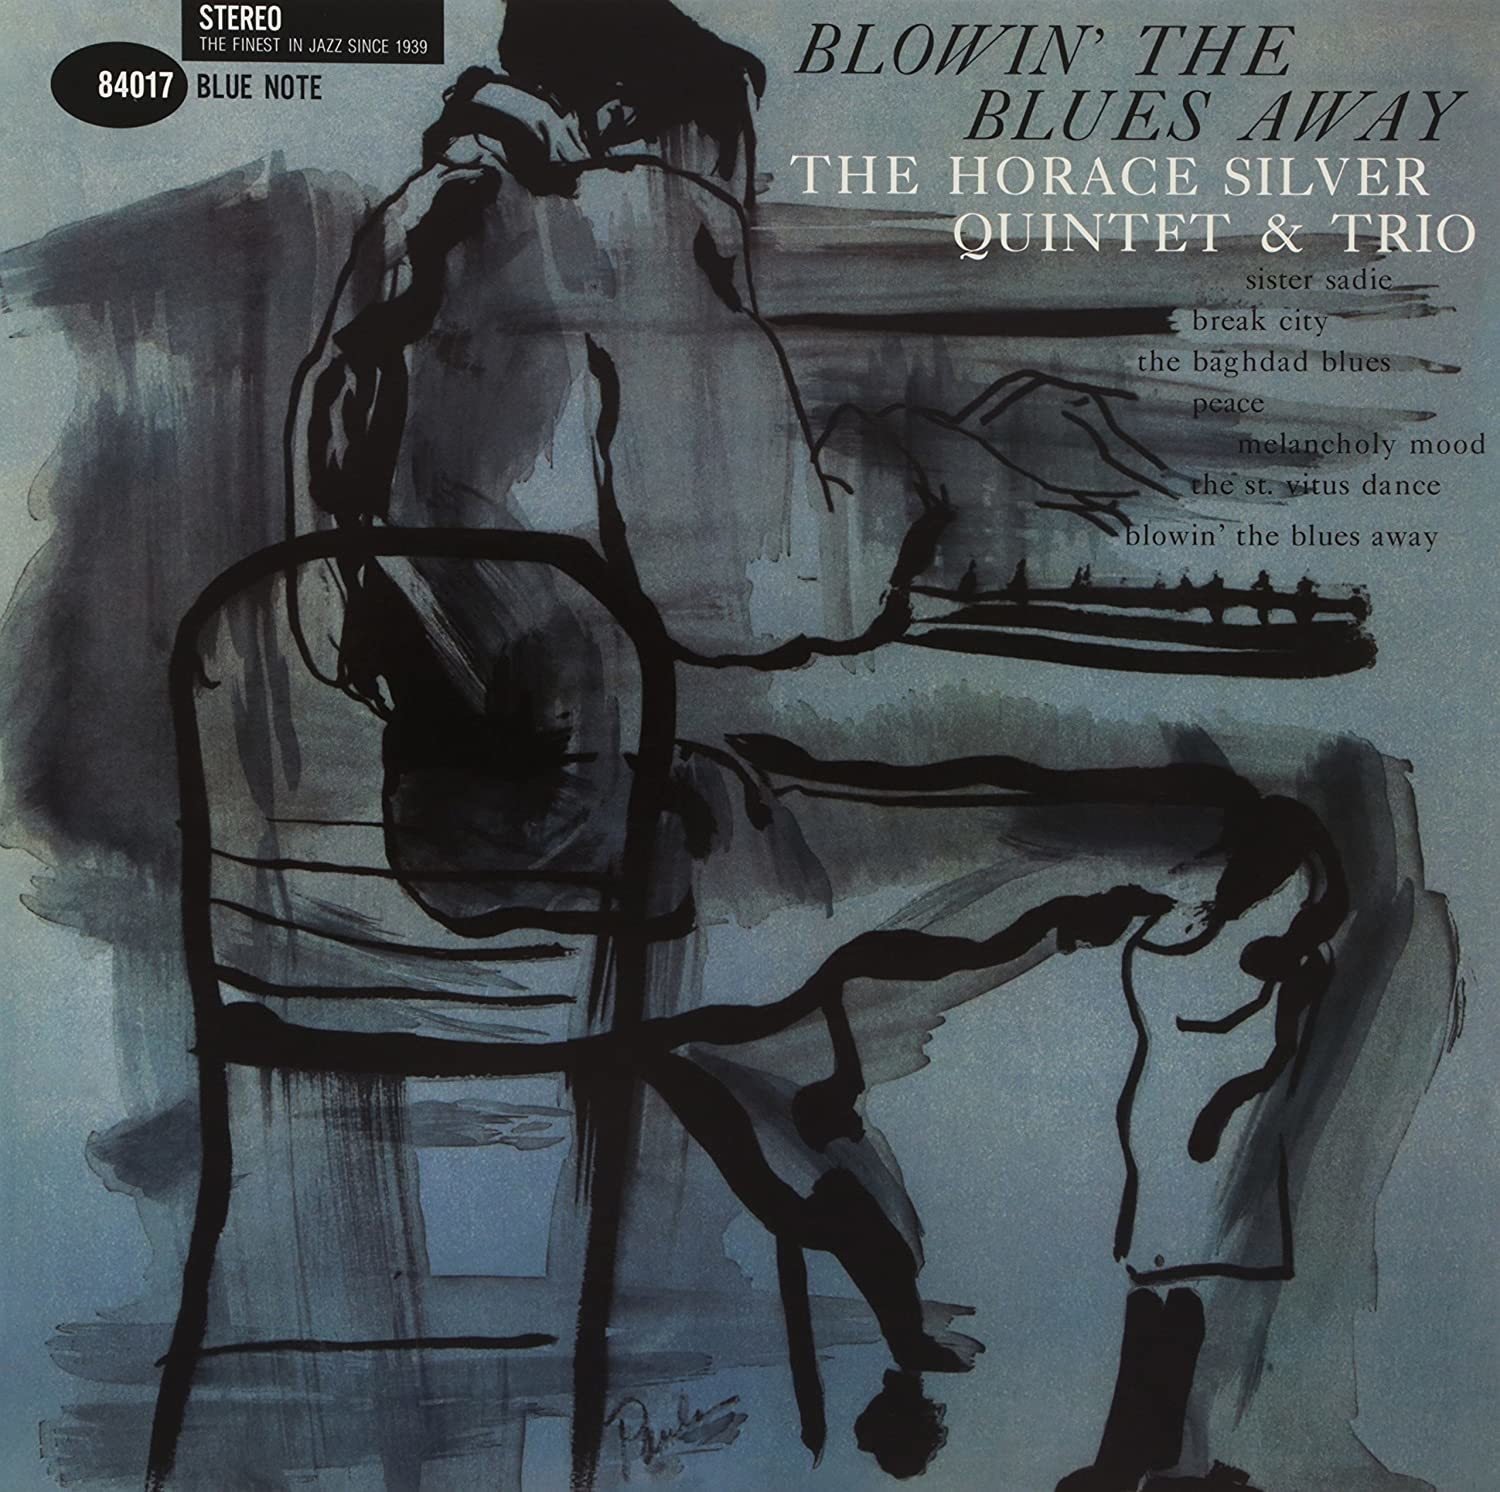 Δίσκος LP Horace Silver - Blowin' The Blues Away (2 LP)